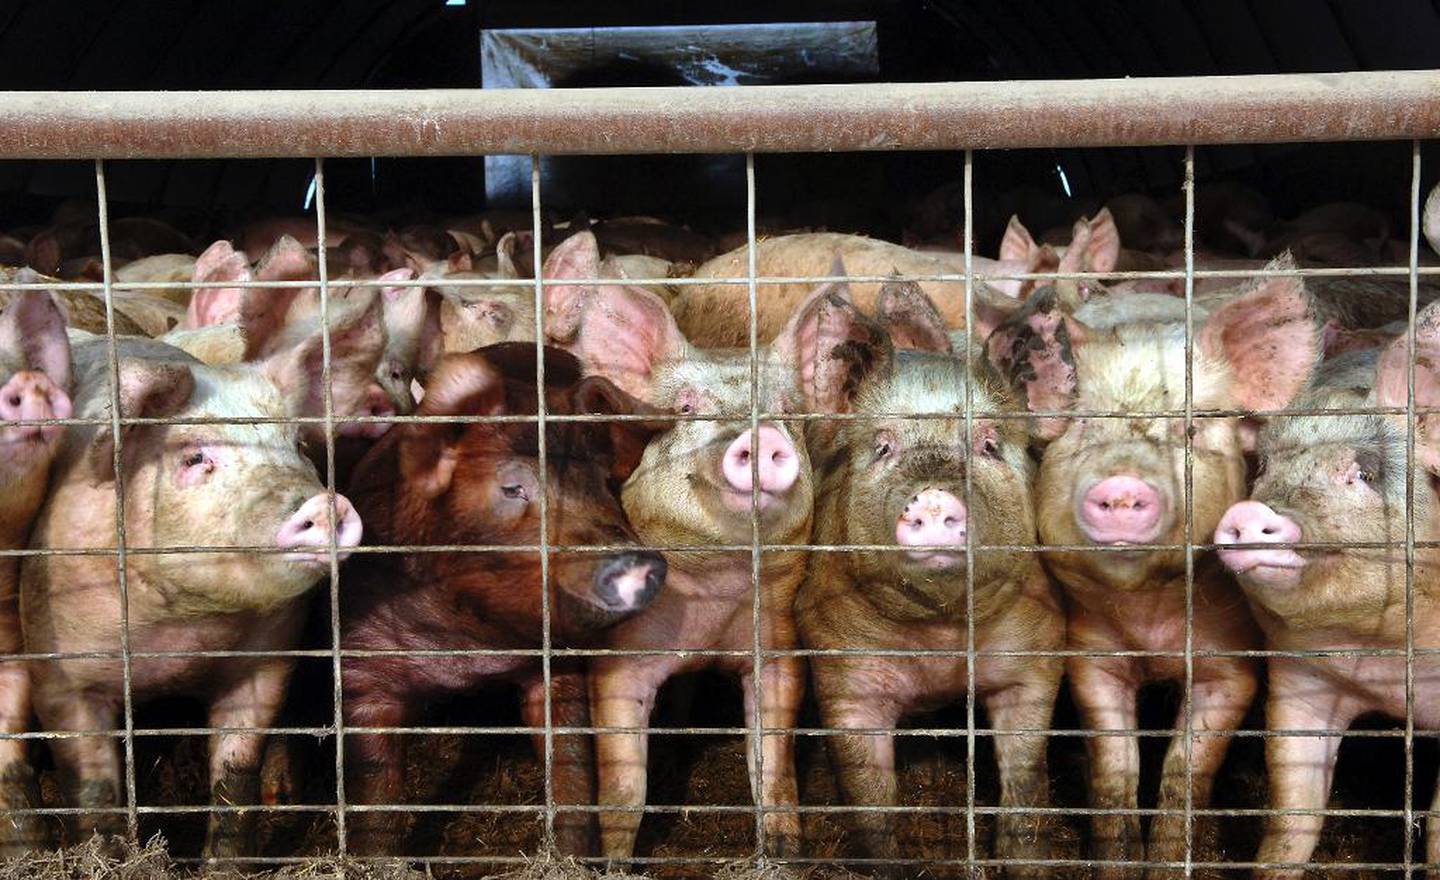 Det er berre to ribber på ein gris. Når ribba er fjerna, er det omlag nitti prosent av grisen att.